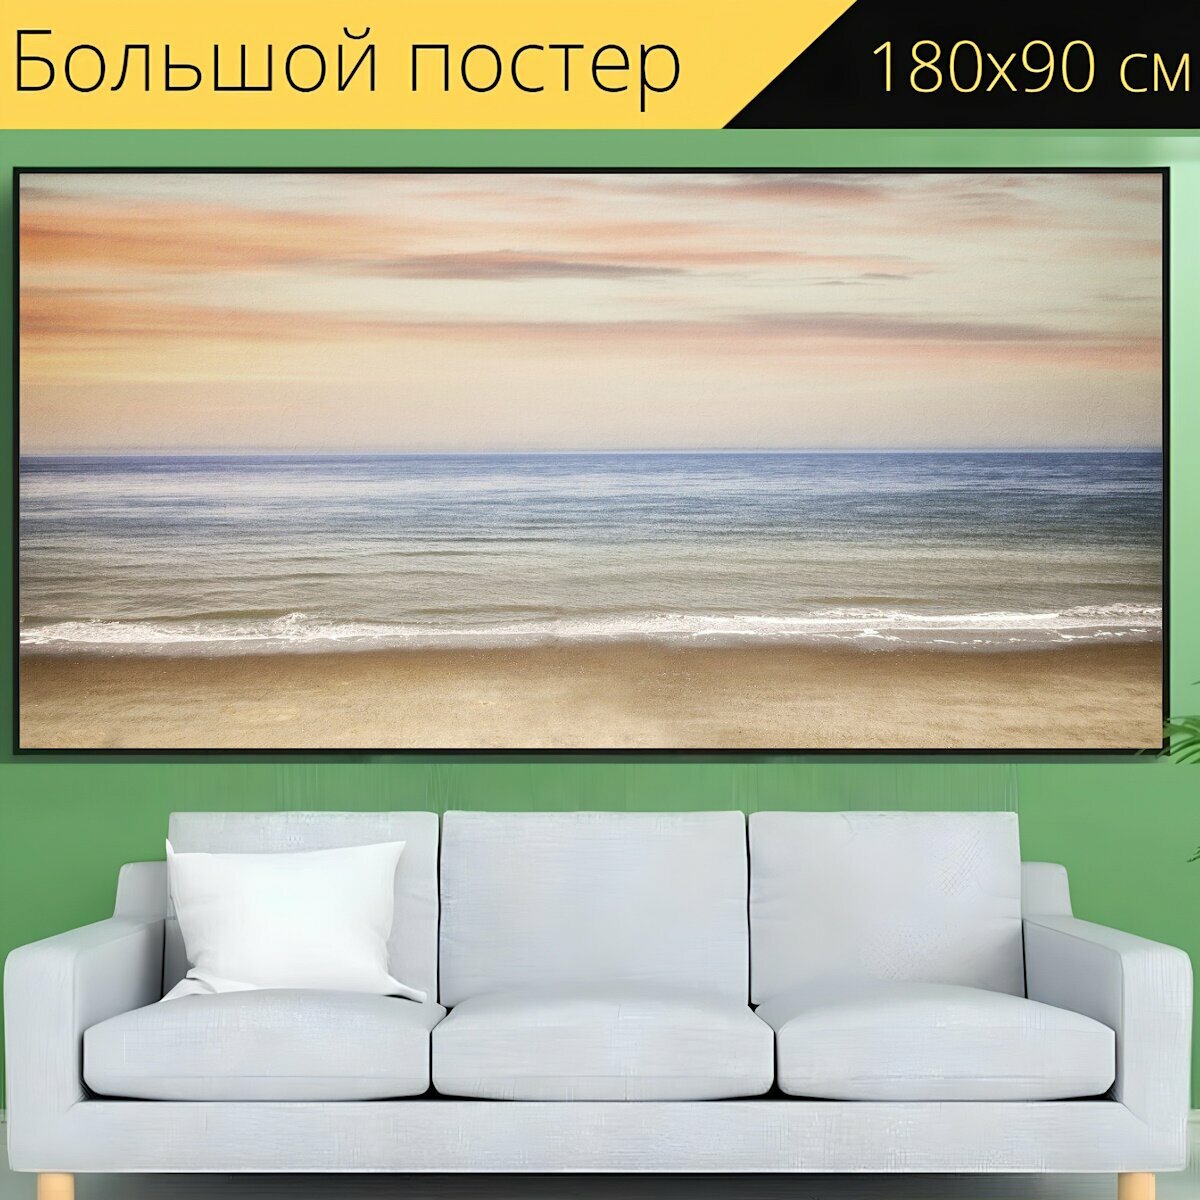 Большой постер "Пляж, морской берег, море" 180 x 90 см. для интерьера